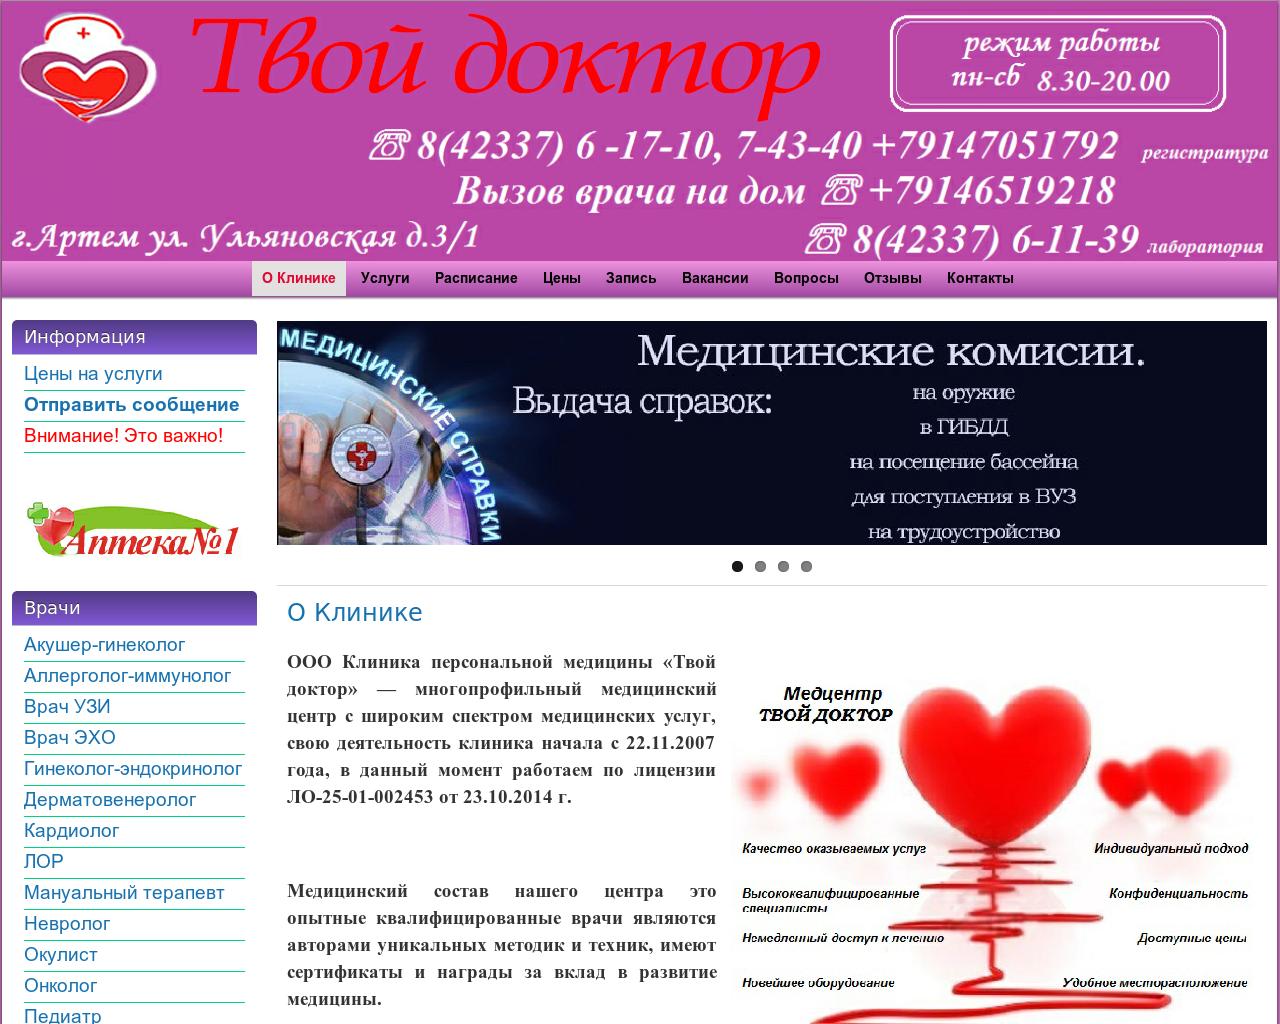 Изображение сайта tvdok.ru в разрешении 1280x1024